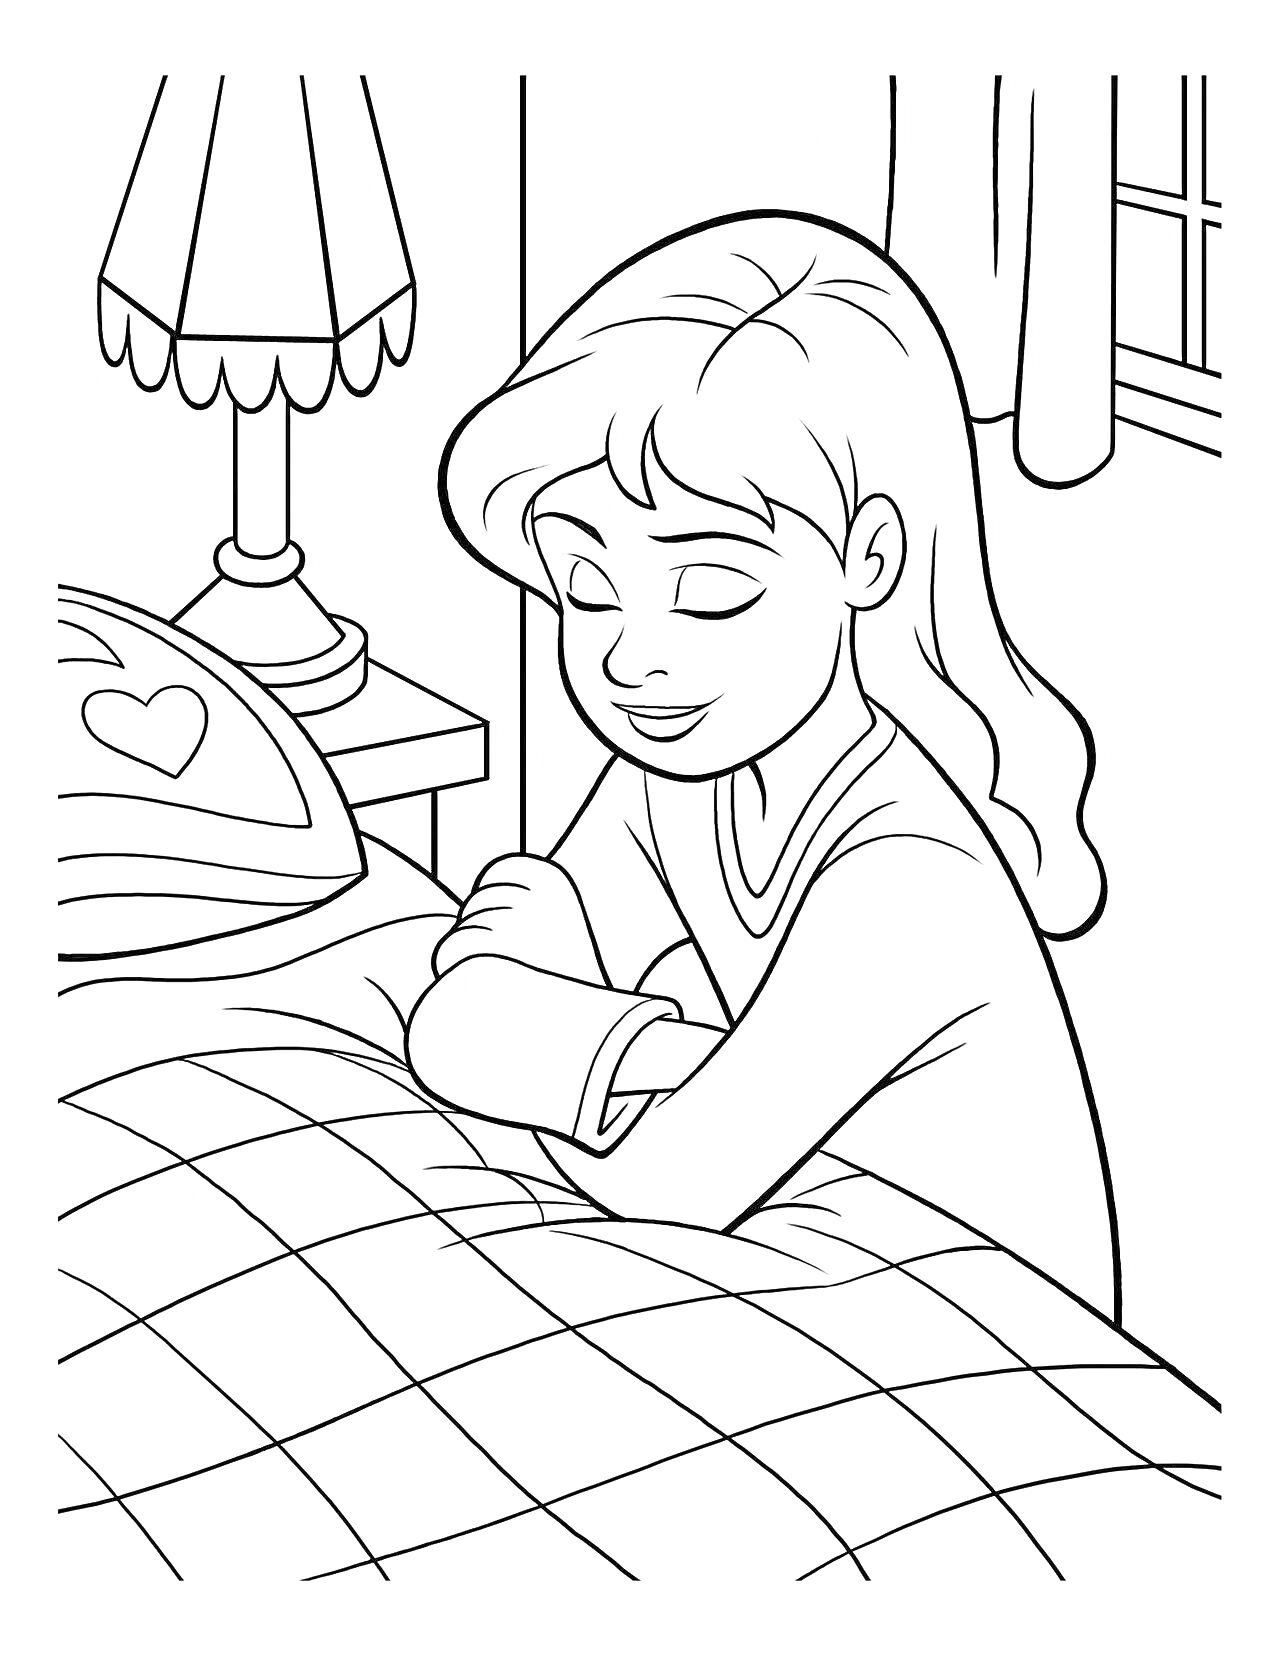 Раскраска Девочка молится перед сном, комната с лампой на тумбочке